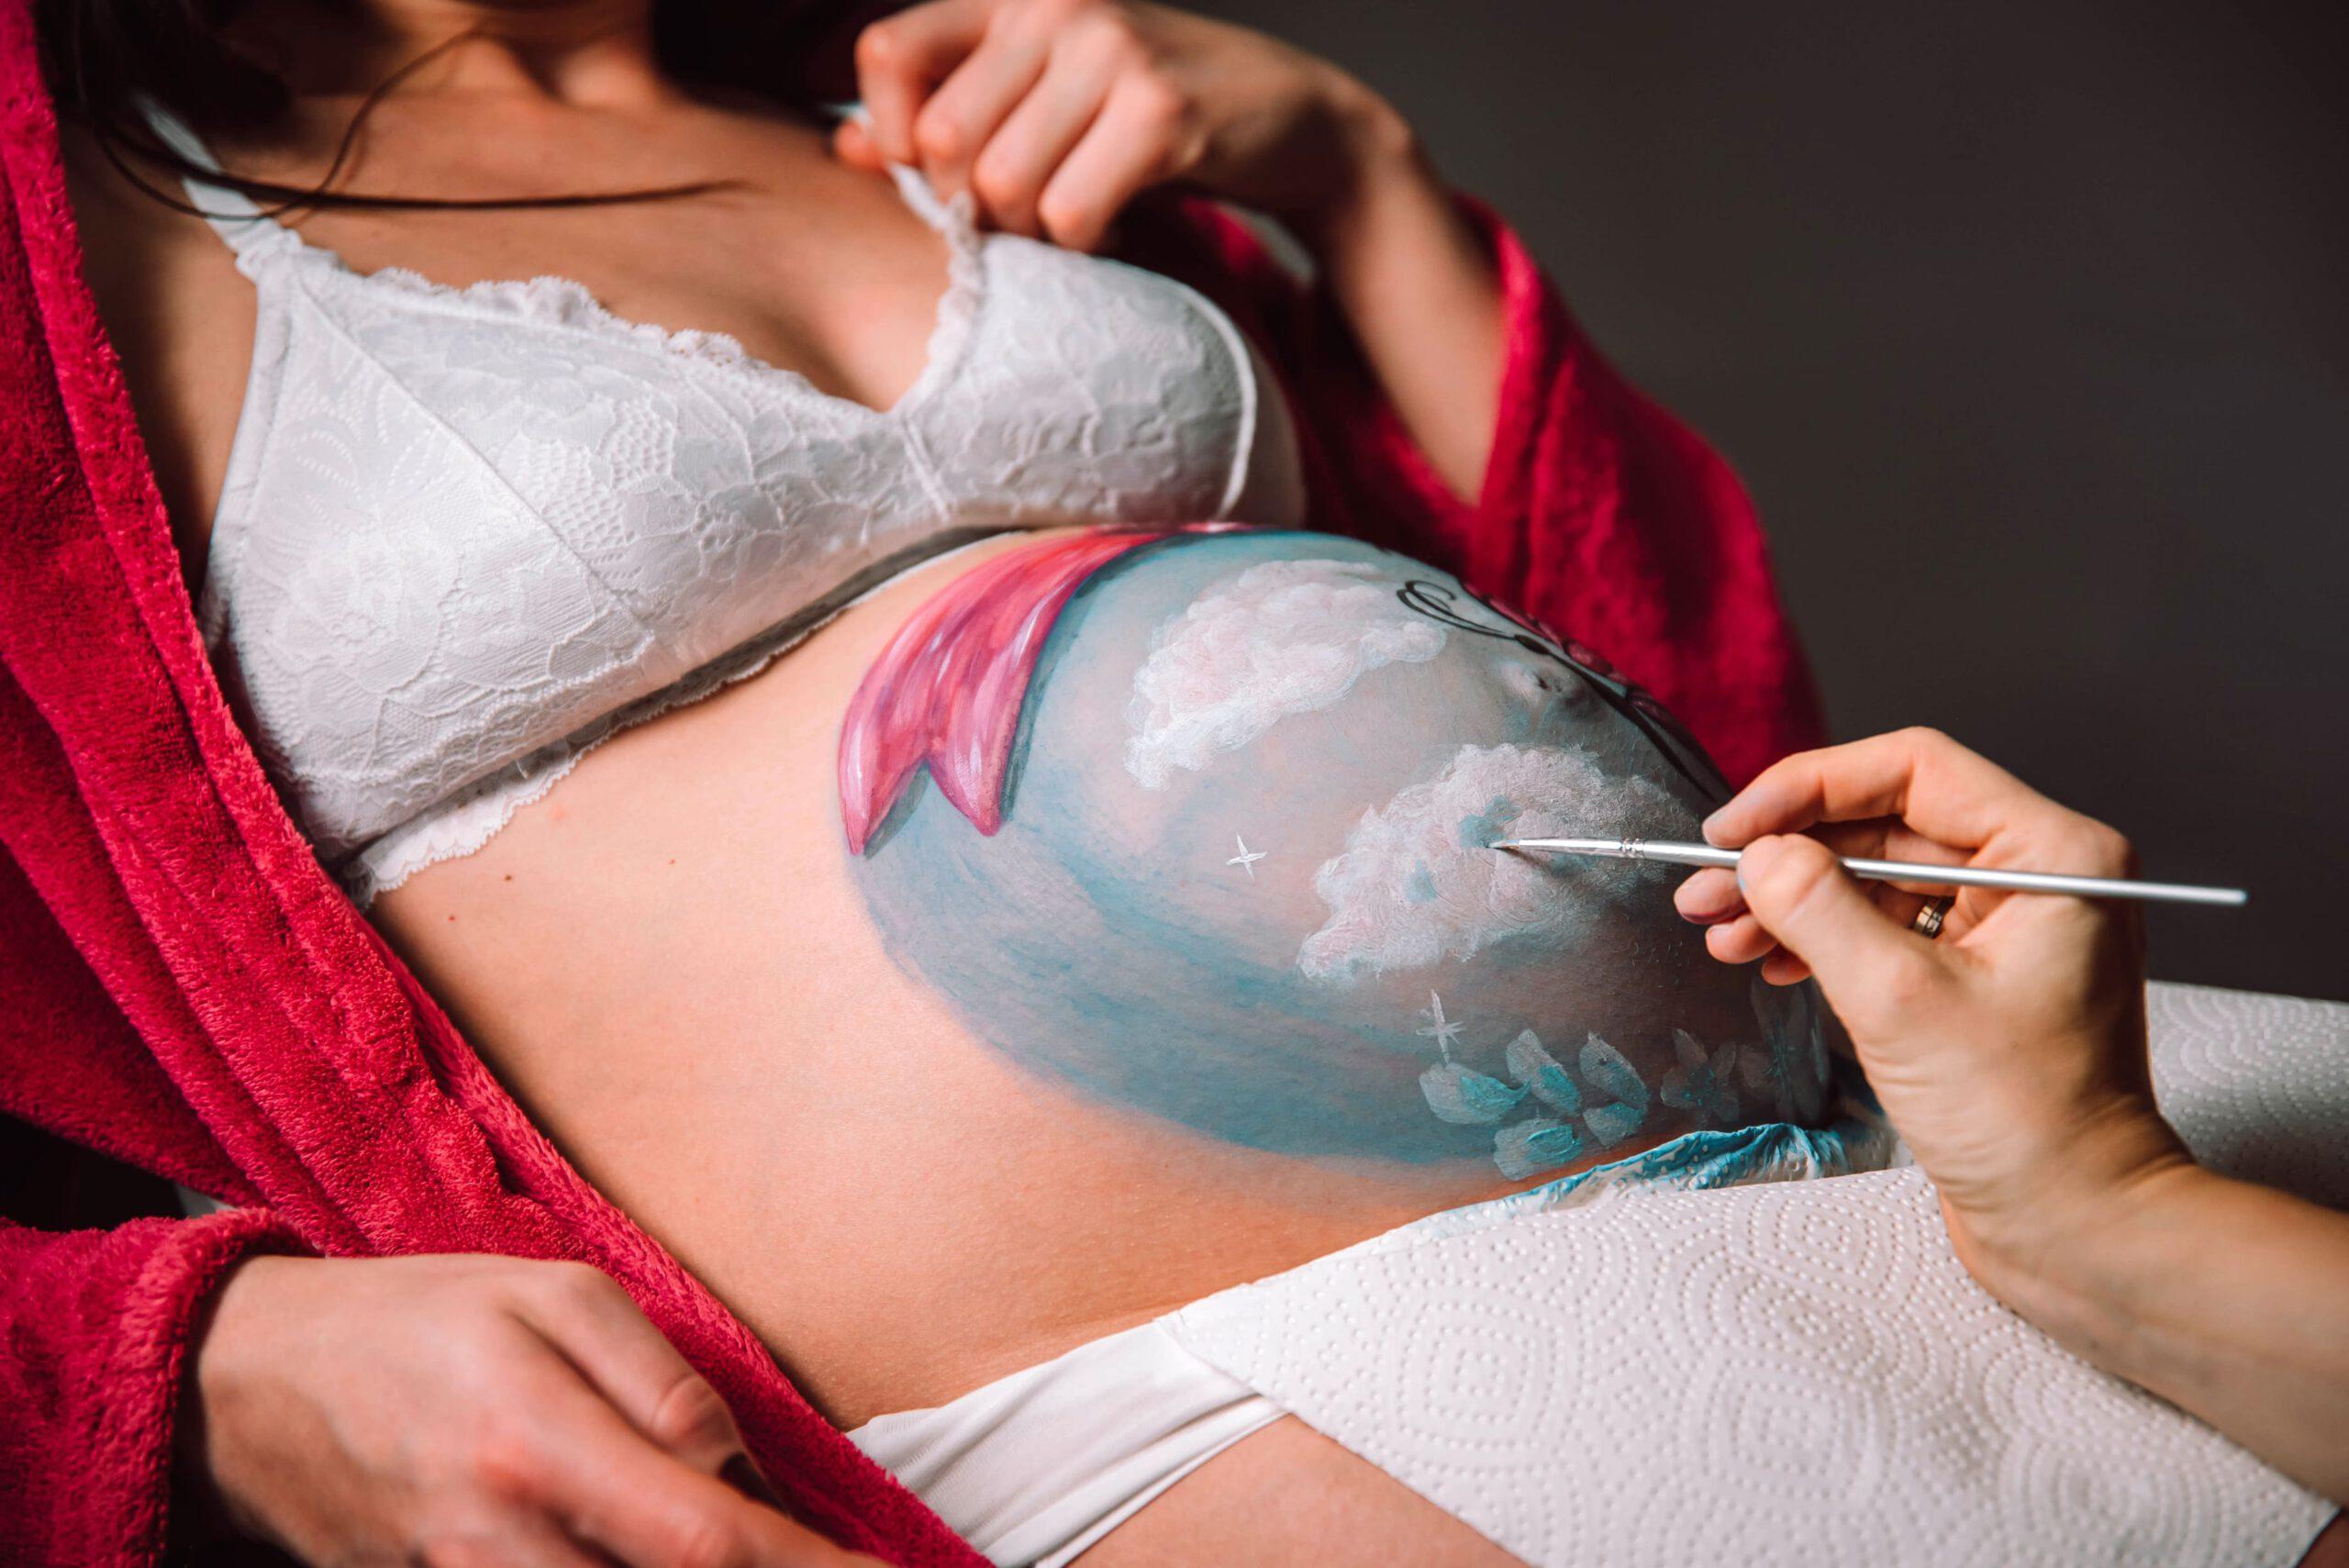 schwanger, babybauch, belly painting, babybauch bemalen, malerei auf babybauch, chemnitz, schwangeren fotografie